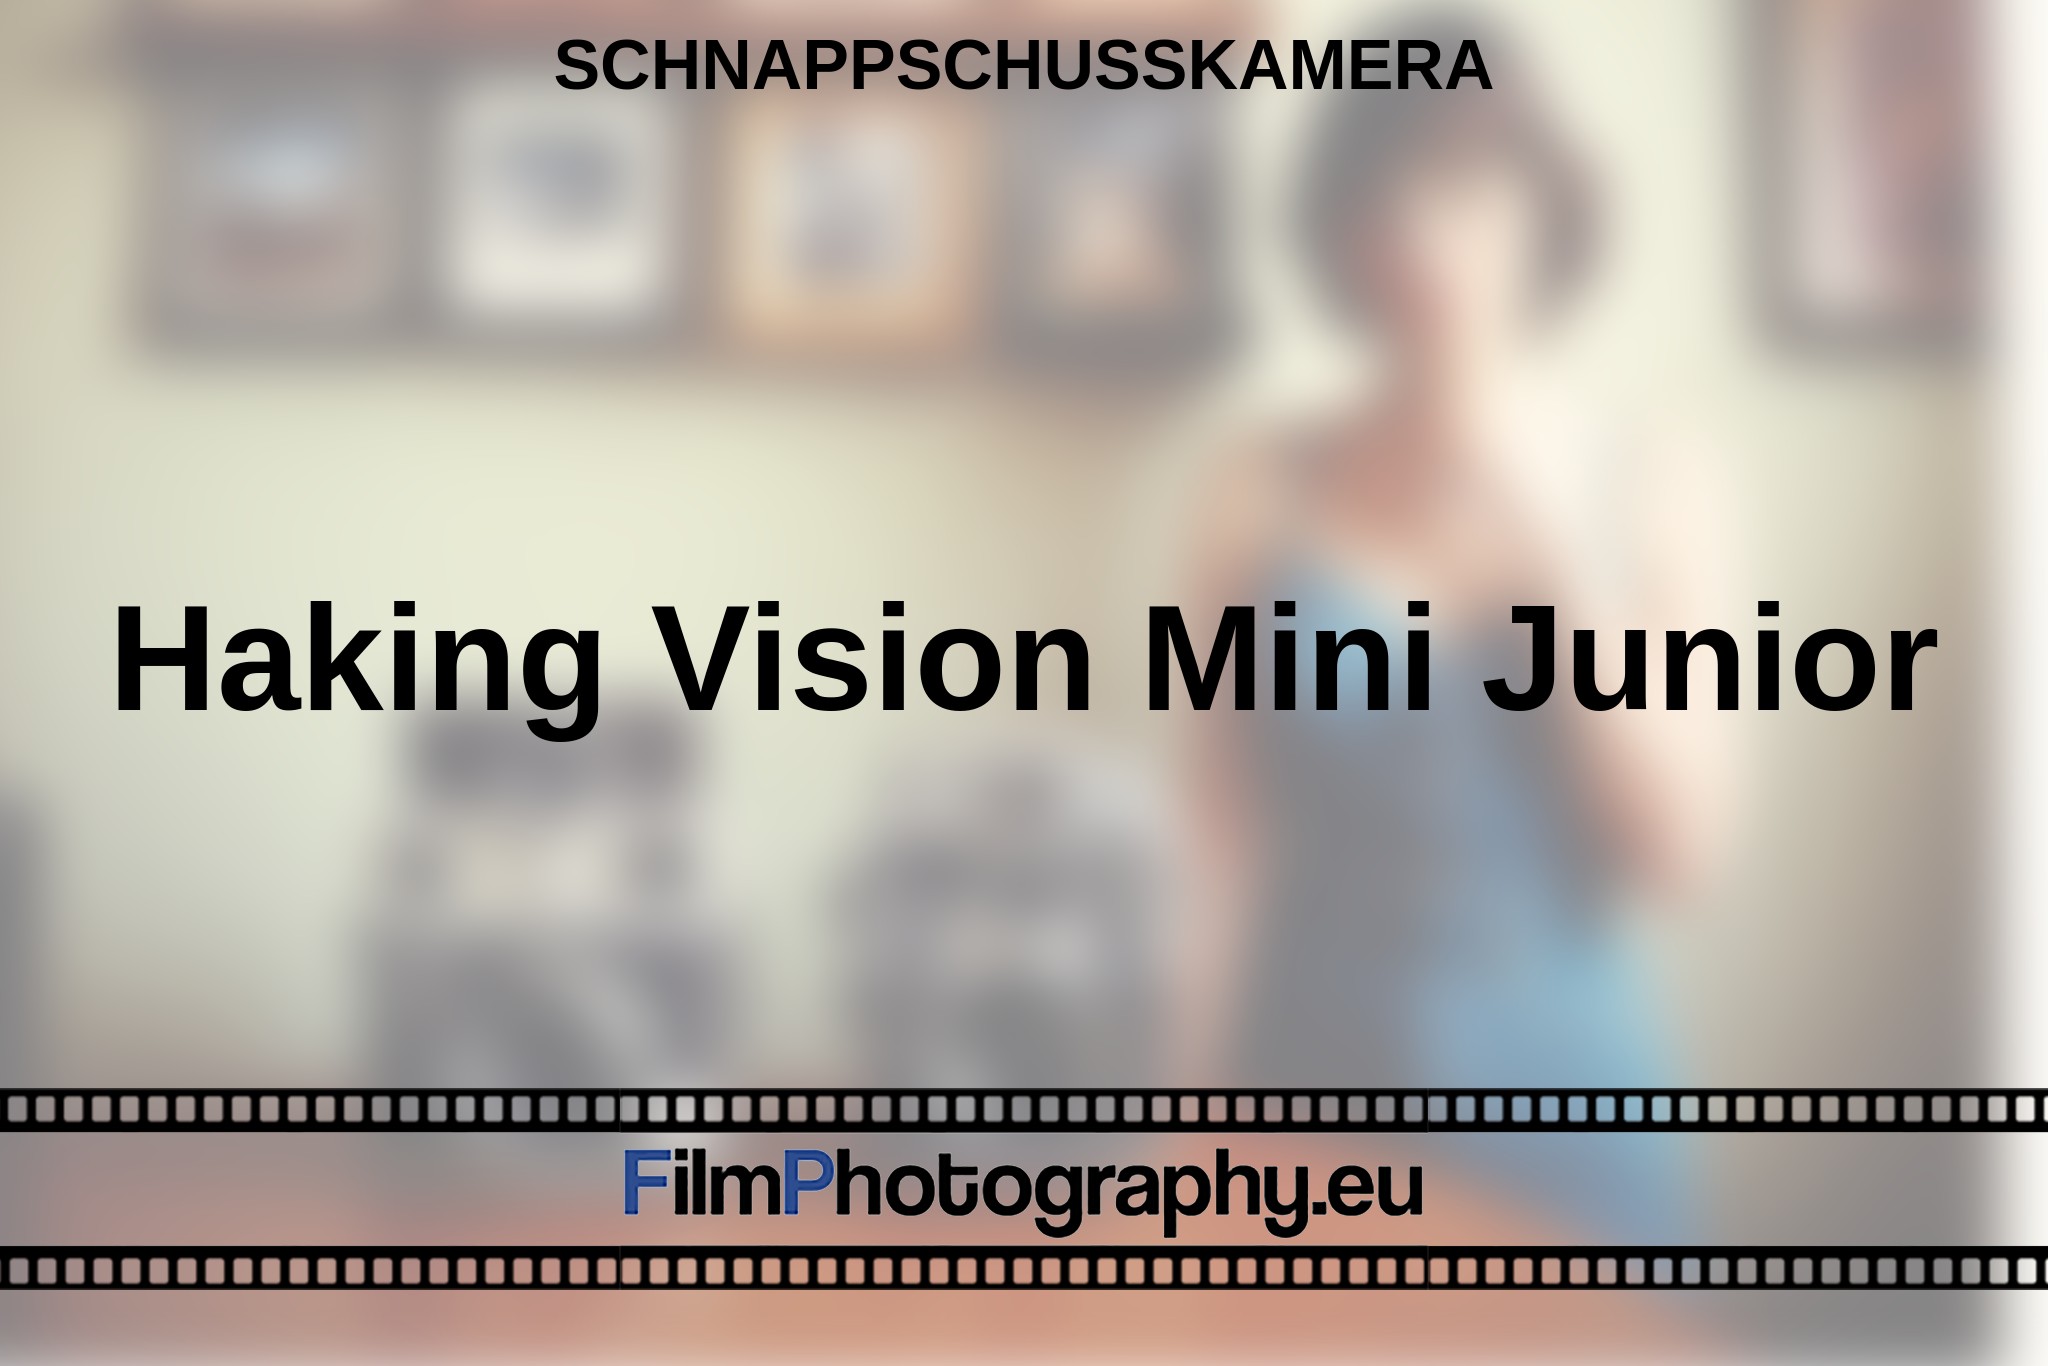 haking-vision-mini-junior-schnappschusskamera-bnv.jpg